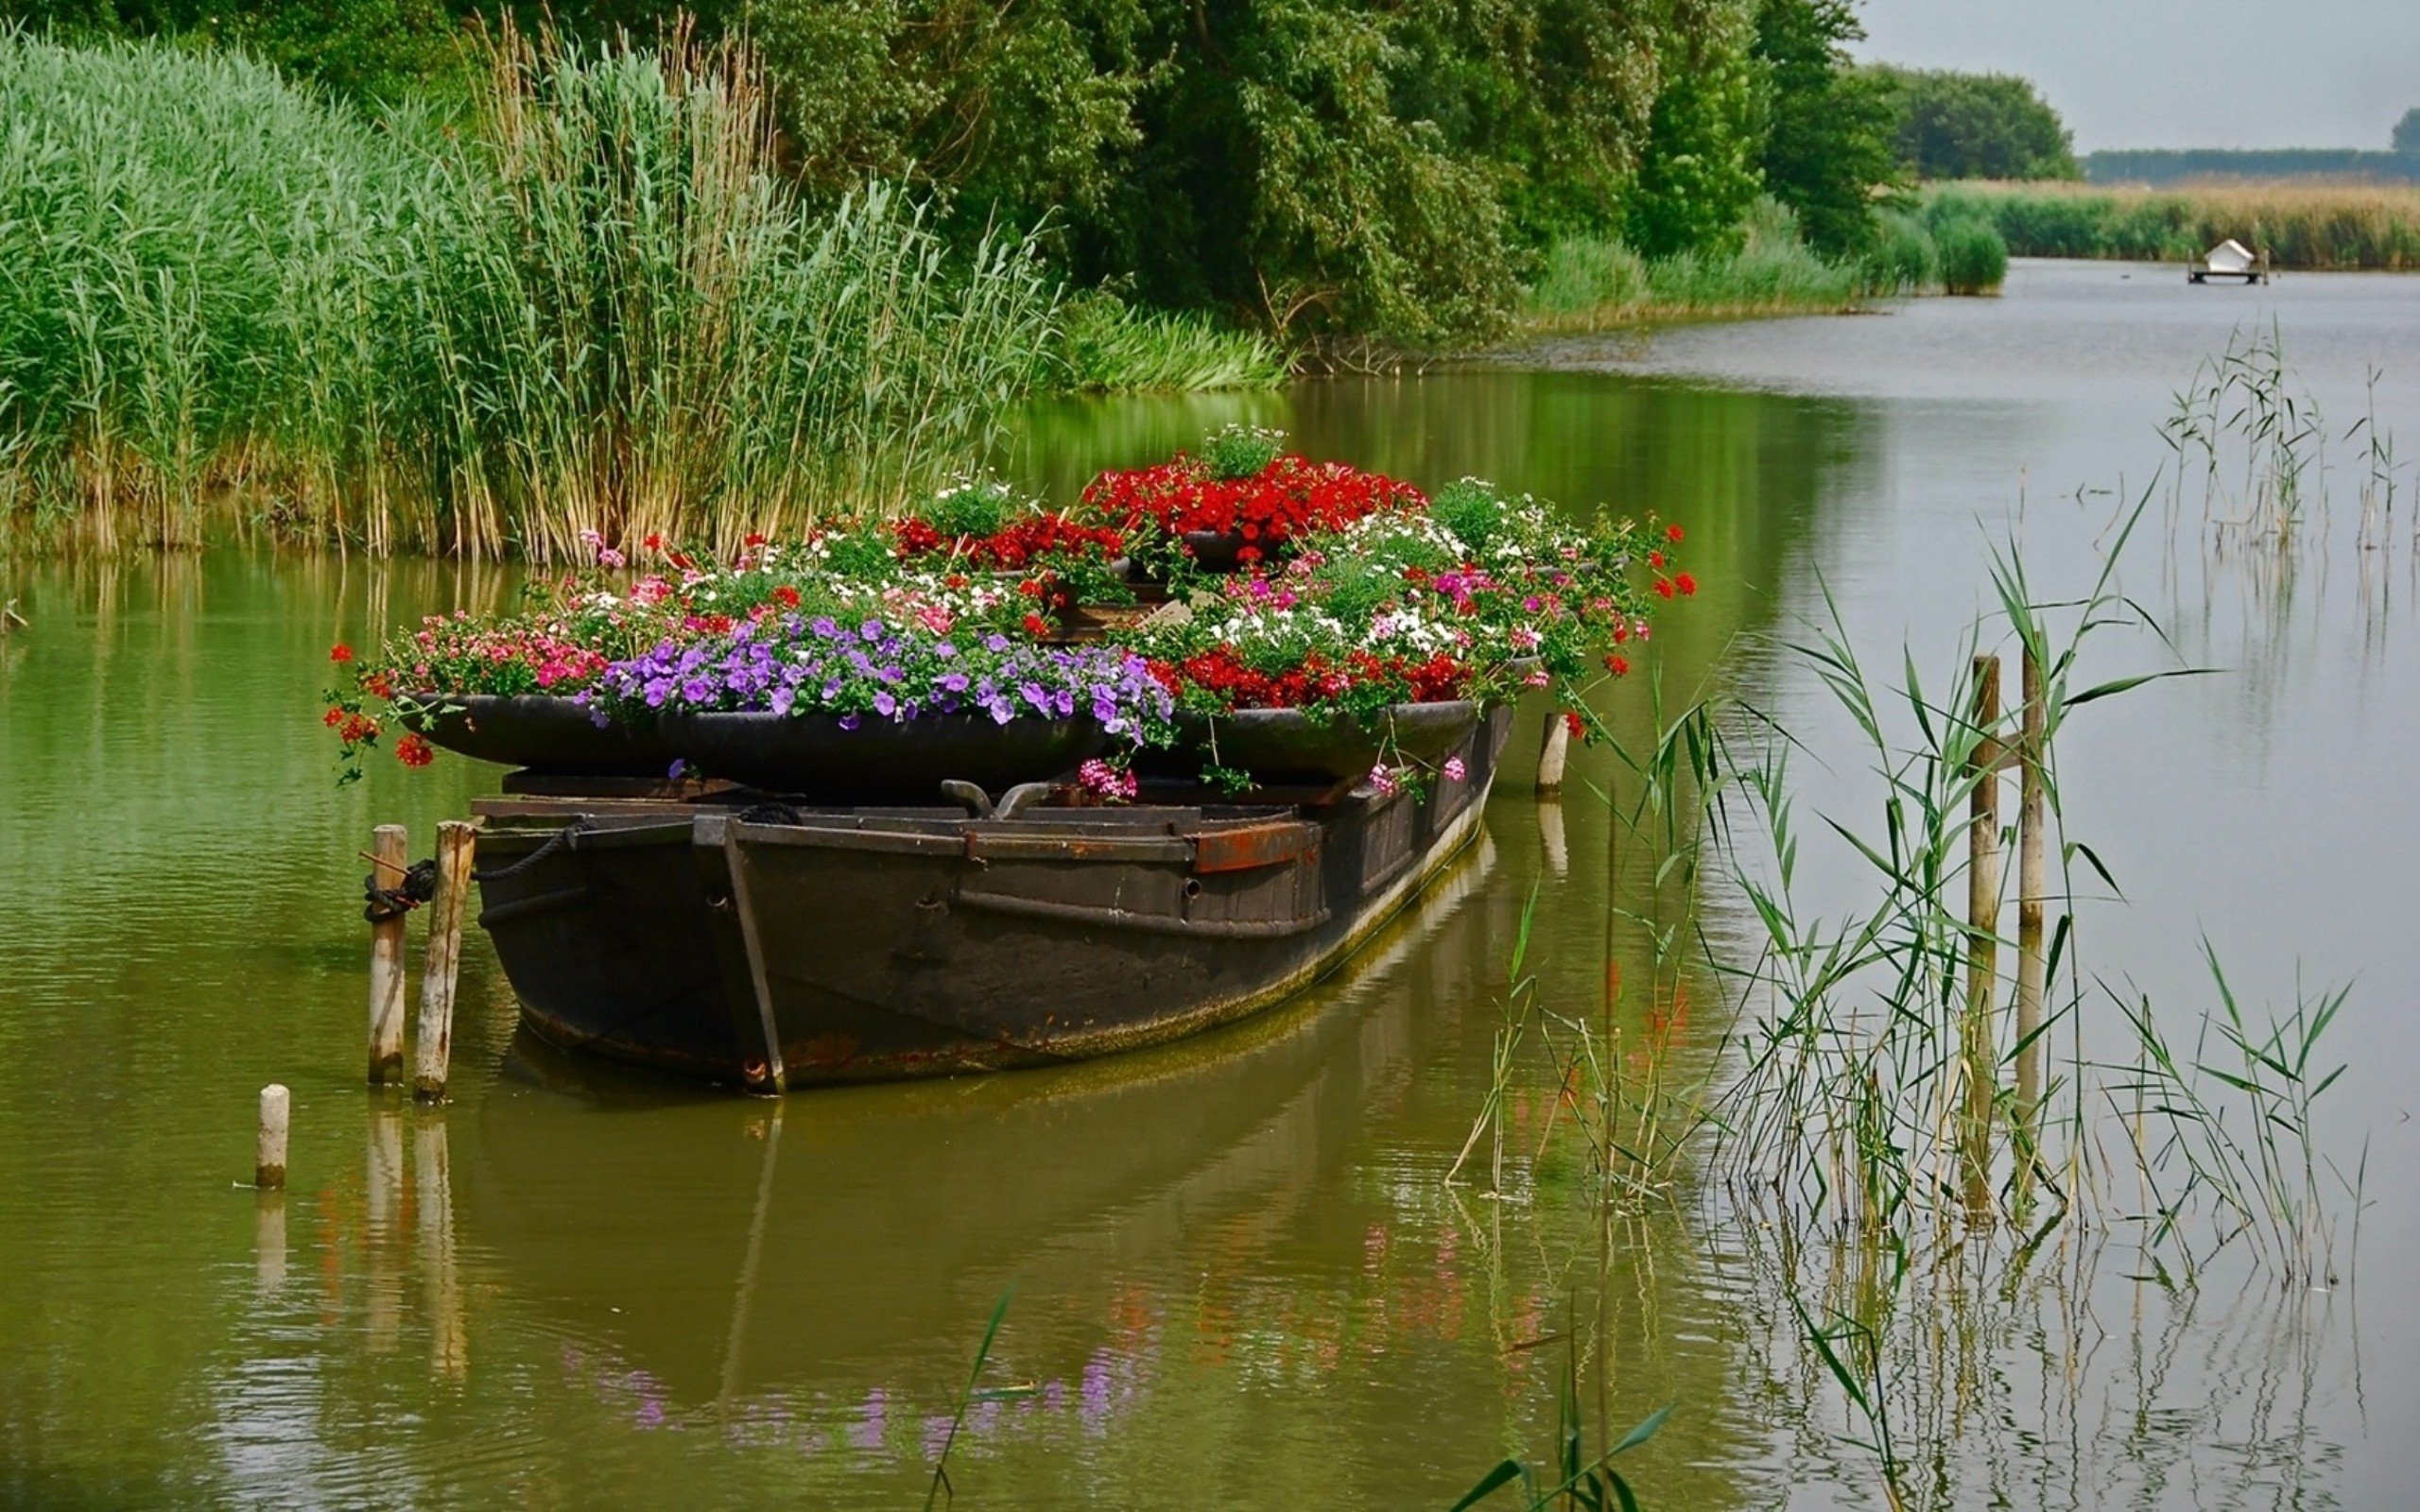 Купить цветы в озерах. Цветник в лодке. Плавающие клумбы. Лодка на пруду. Цветы у реки.